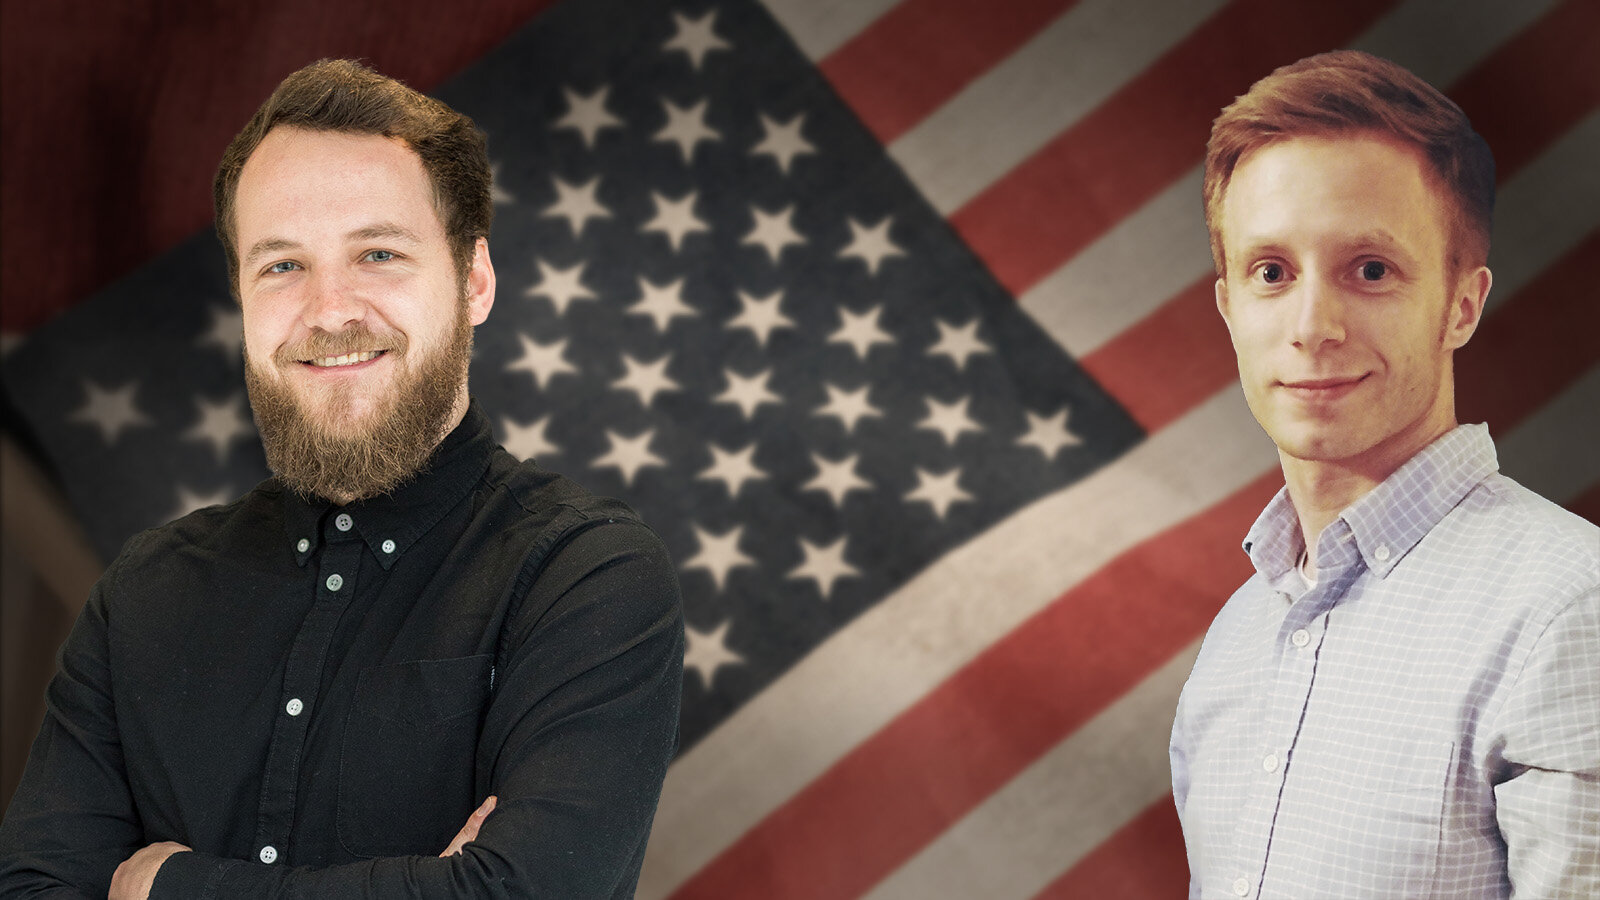 Zwei junge Männer stehen nebeneinander. Im Hintergrund ist die US-Flagge zu sehen.